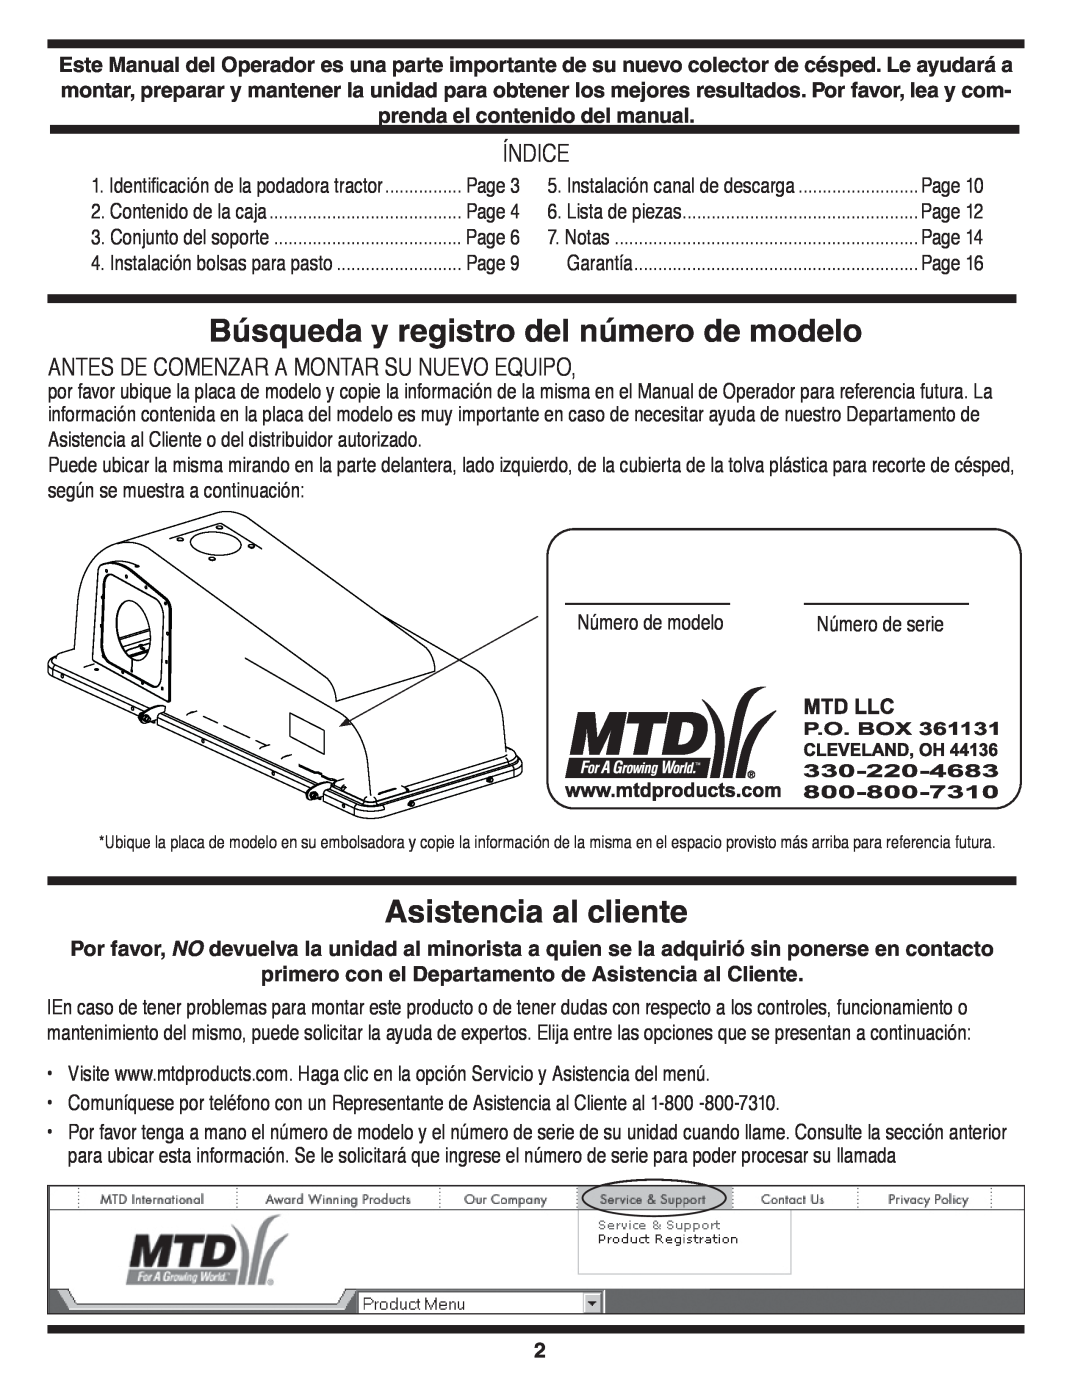 MTD OHD 190-180 warranty Búsqueda y registro del número de modelo, Asistencia al cliente, Índice 